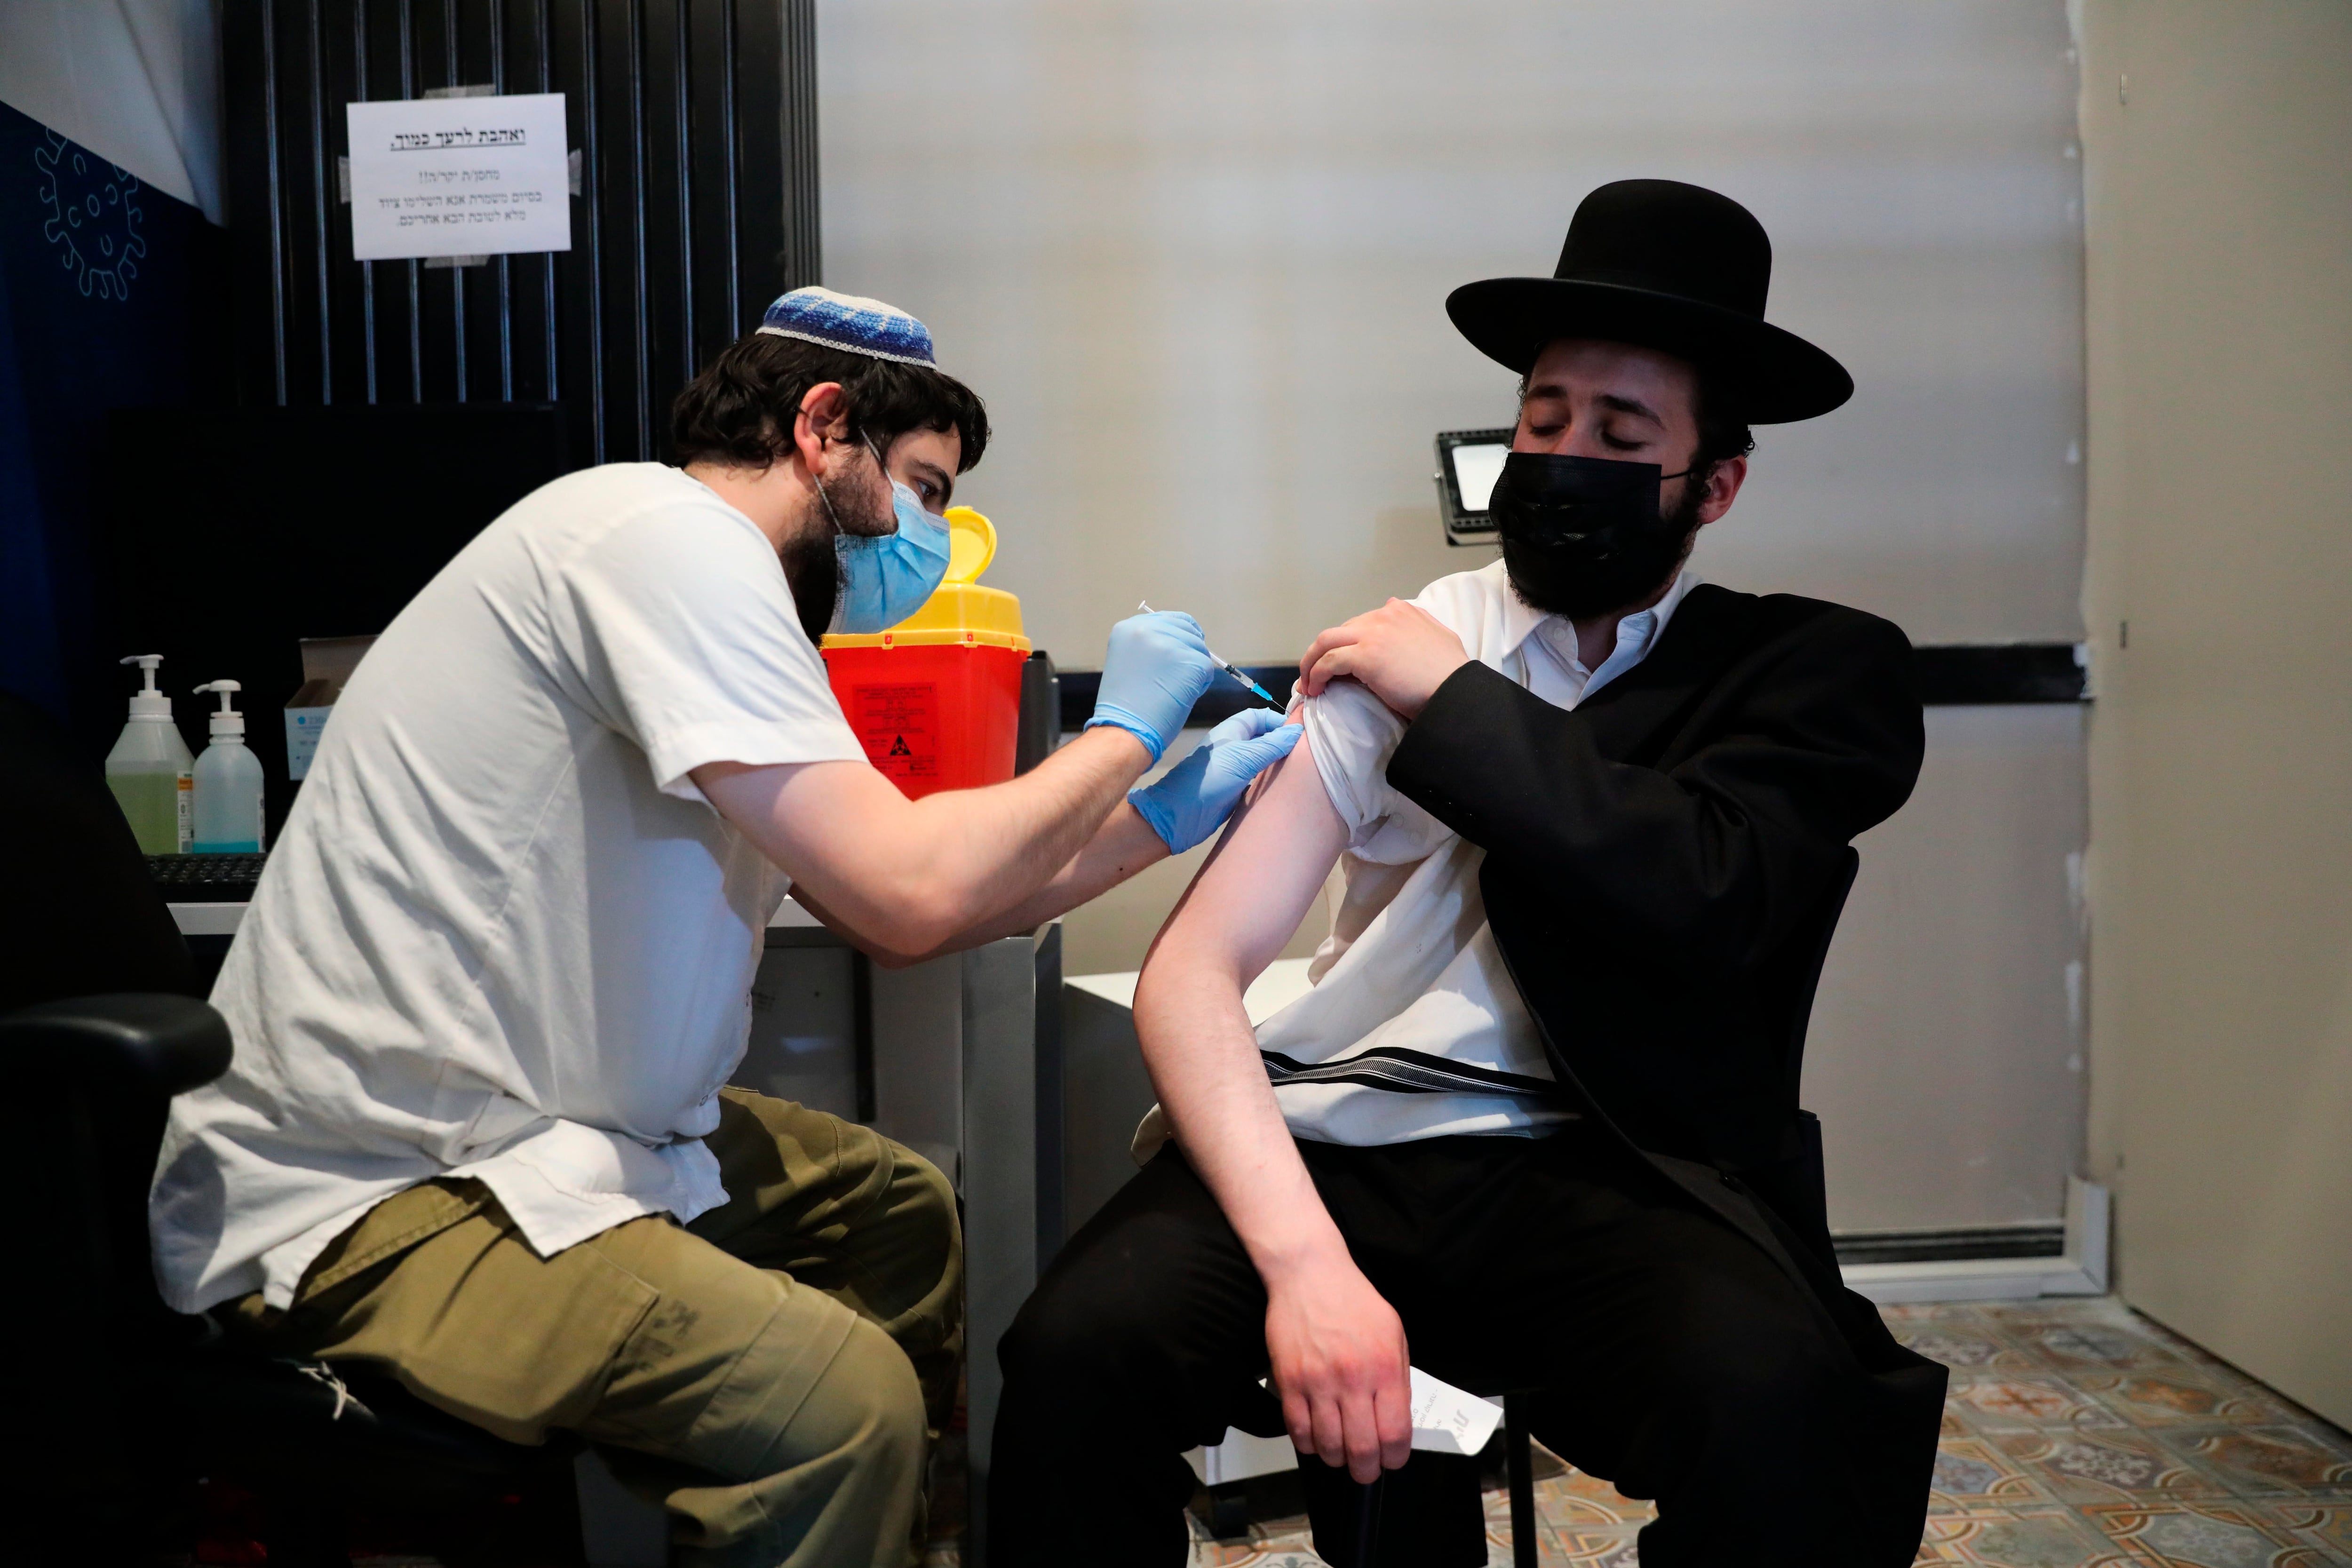 Aparece primer caso de “flurona” en Israel, contagio simultáneo de covid-19 y gripe